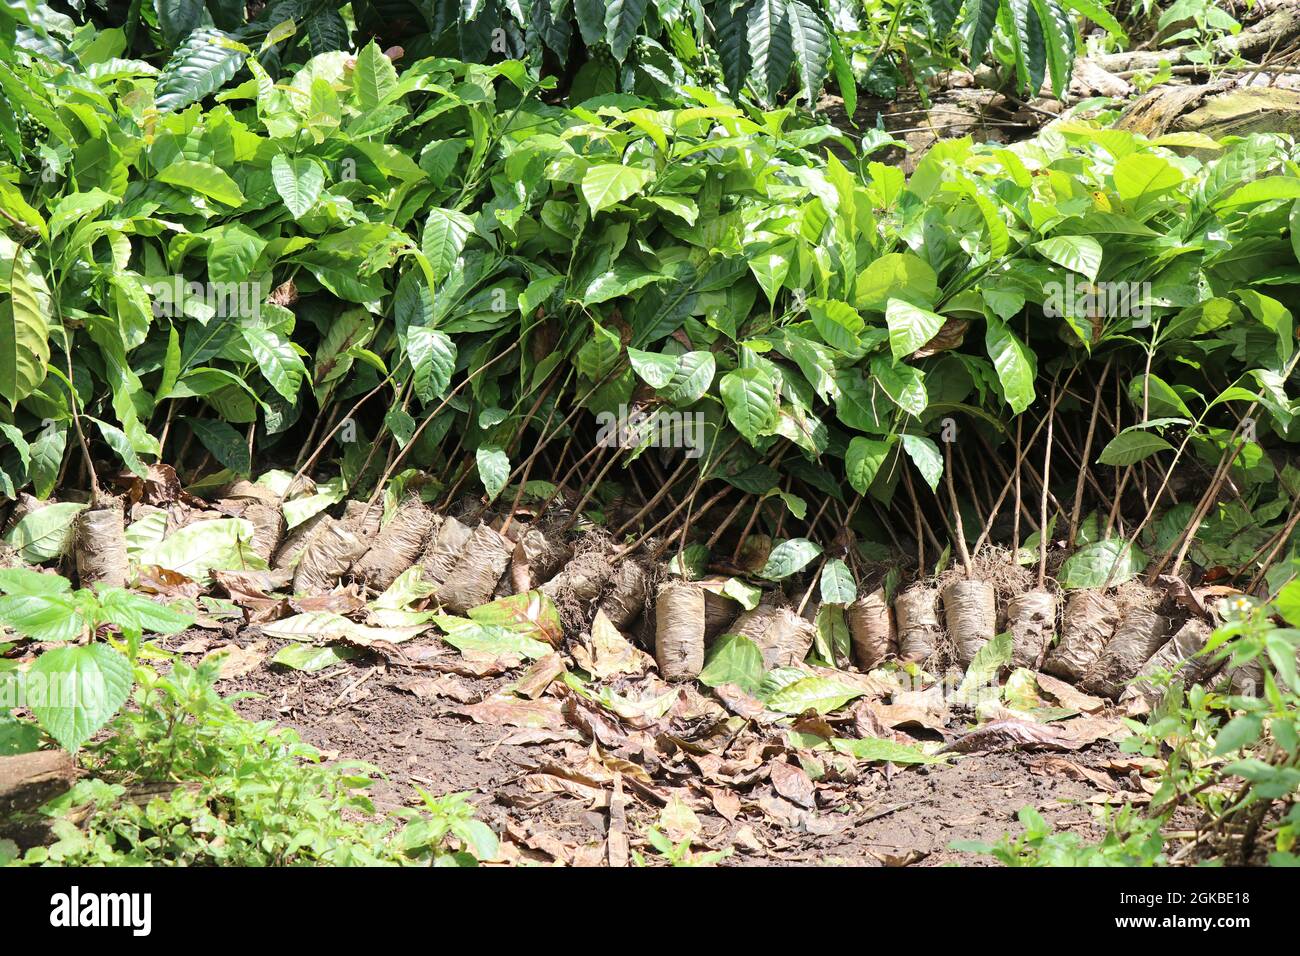 Piantine di piante di robusta allineate, gruppo di piante di caffè di robusta che crescono in borse per vivai pronte per essere piantate a terra Foto Stock